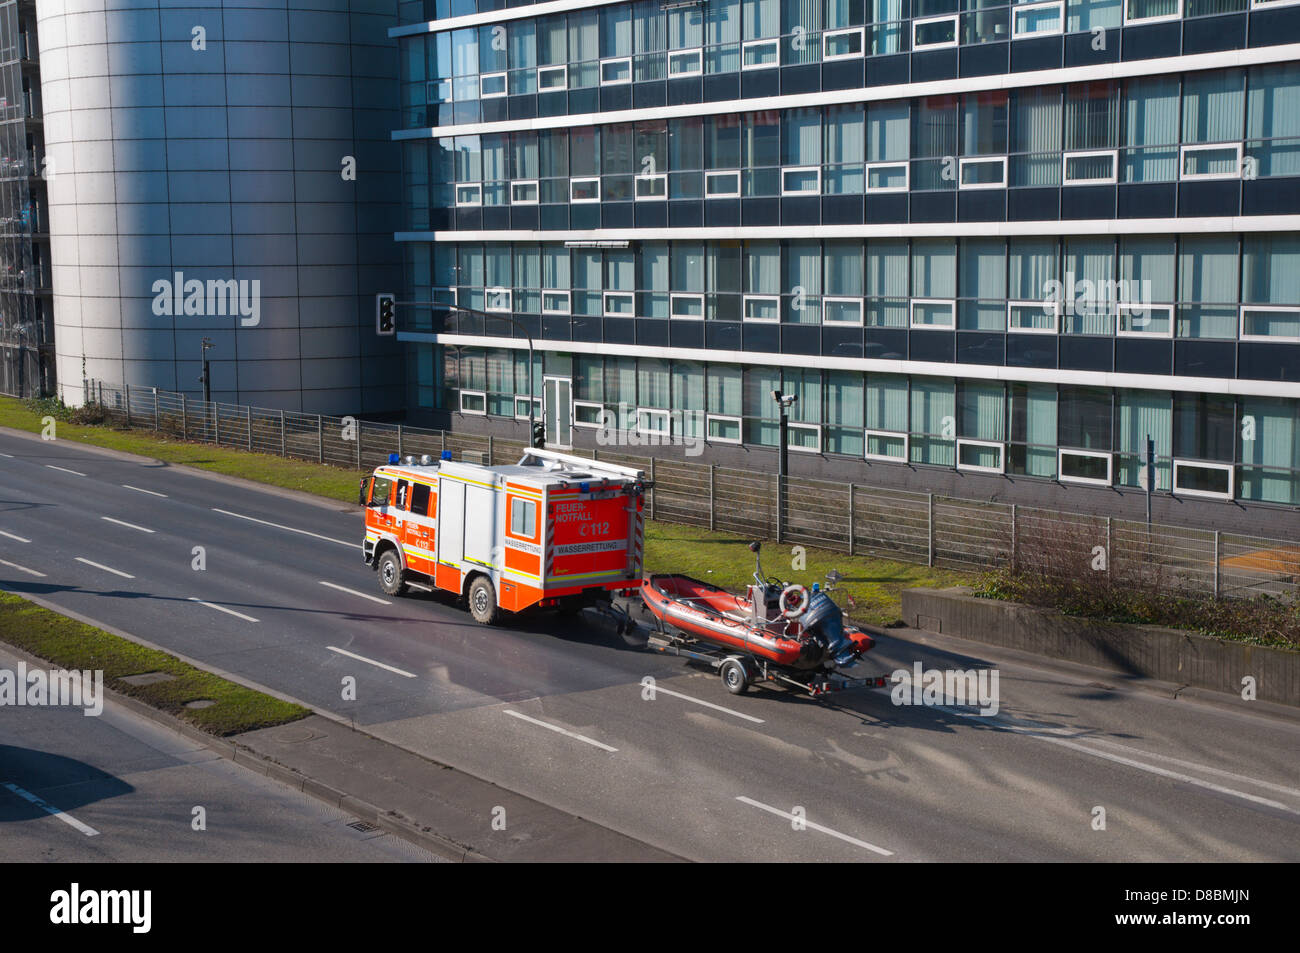 L'incendie du véhicule de secours avec voile Neusser Strasse street Quartier Unterbilk Dusseldorf Allemagne Europe Banque D'Images